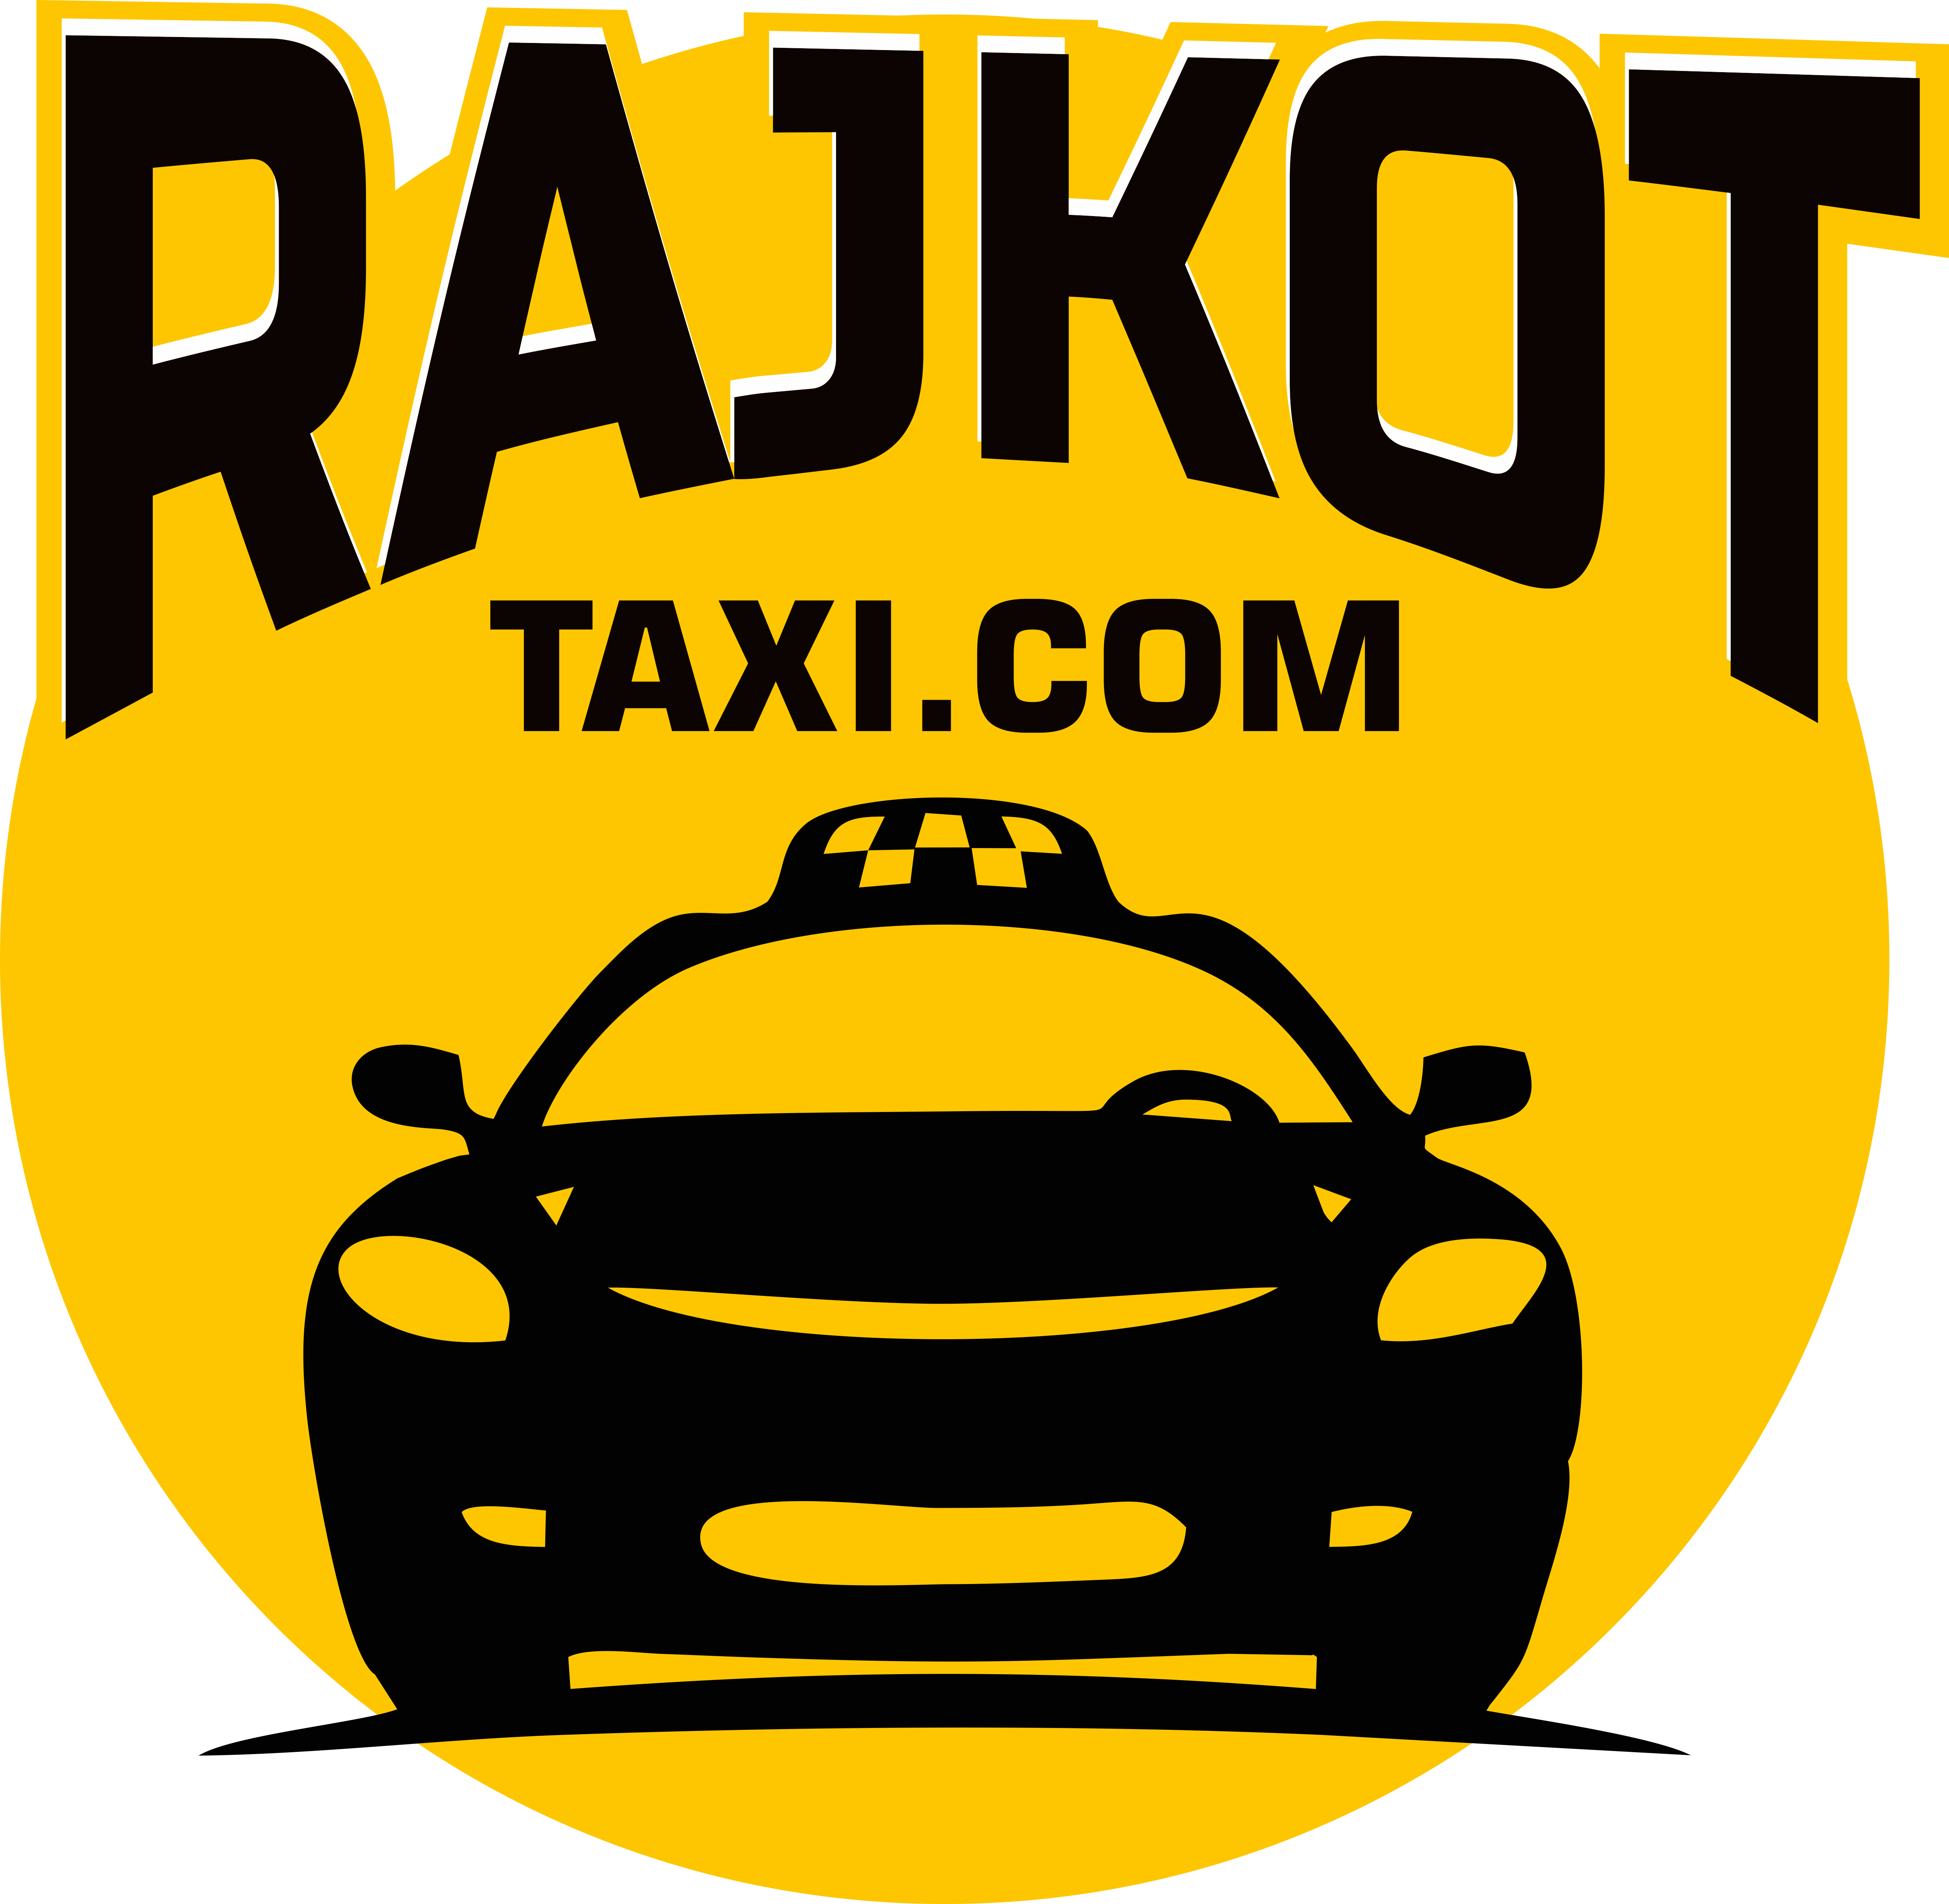 RajkotTaxi.Com